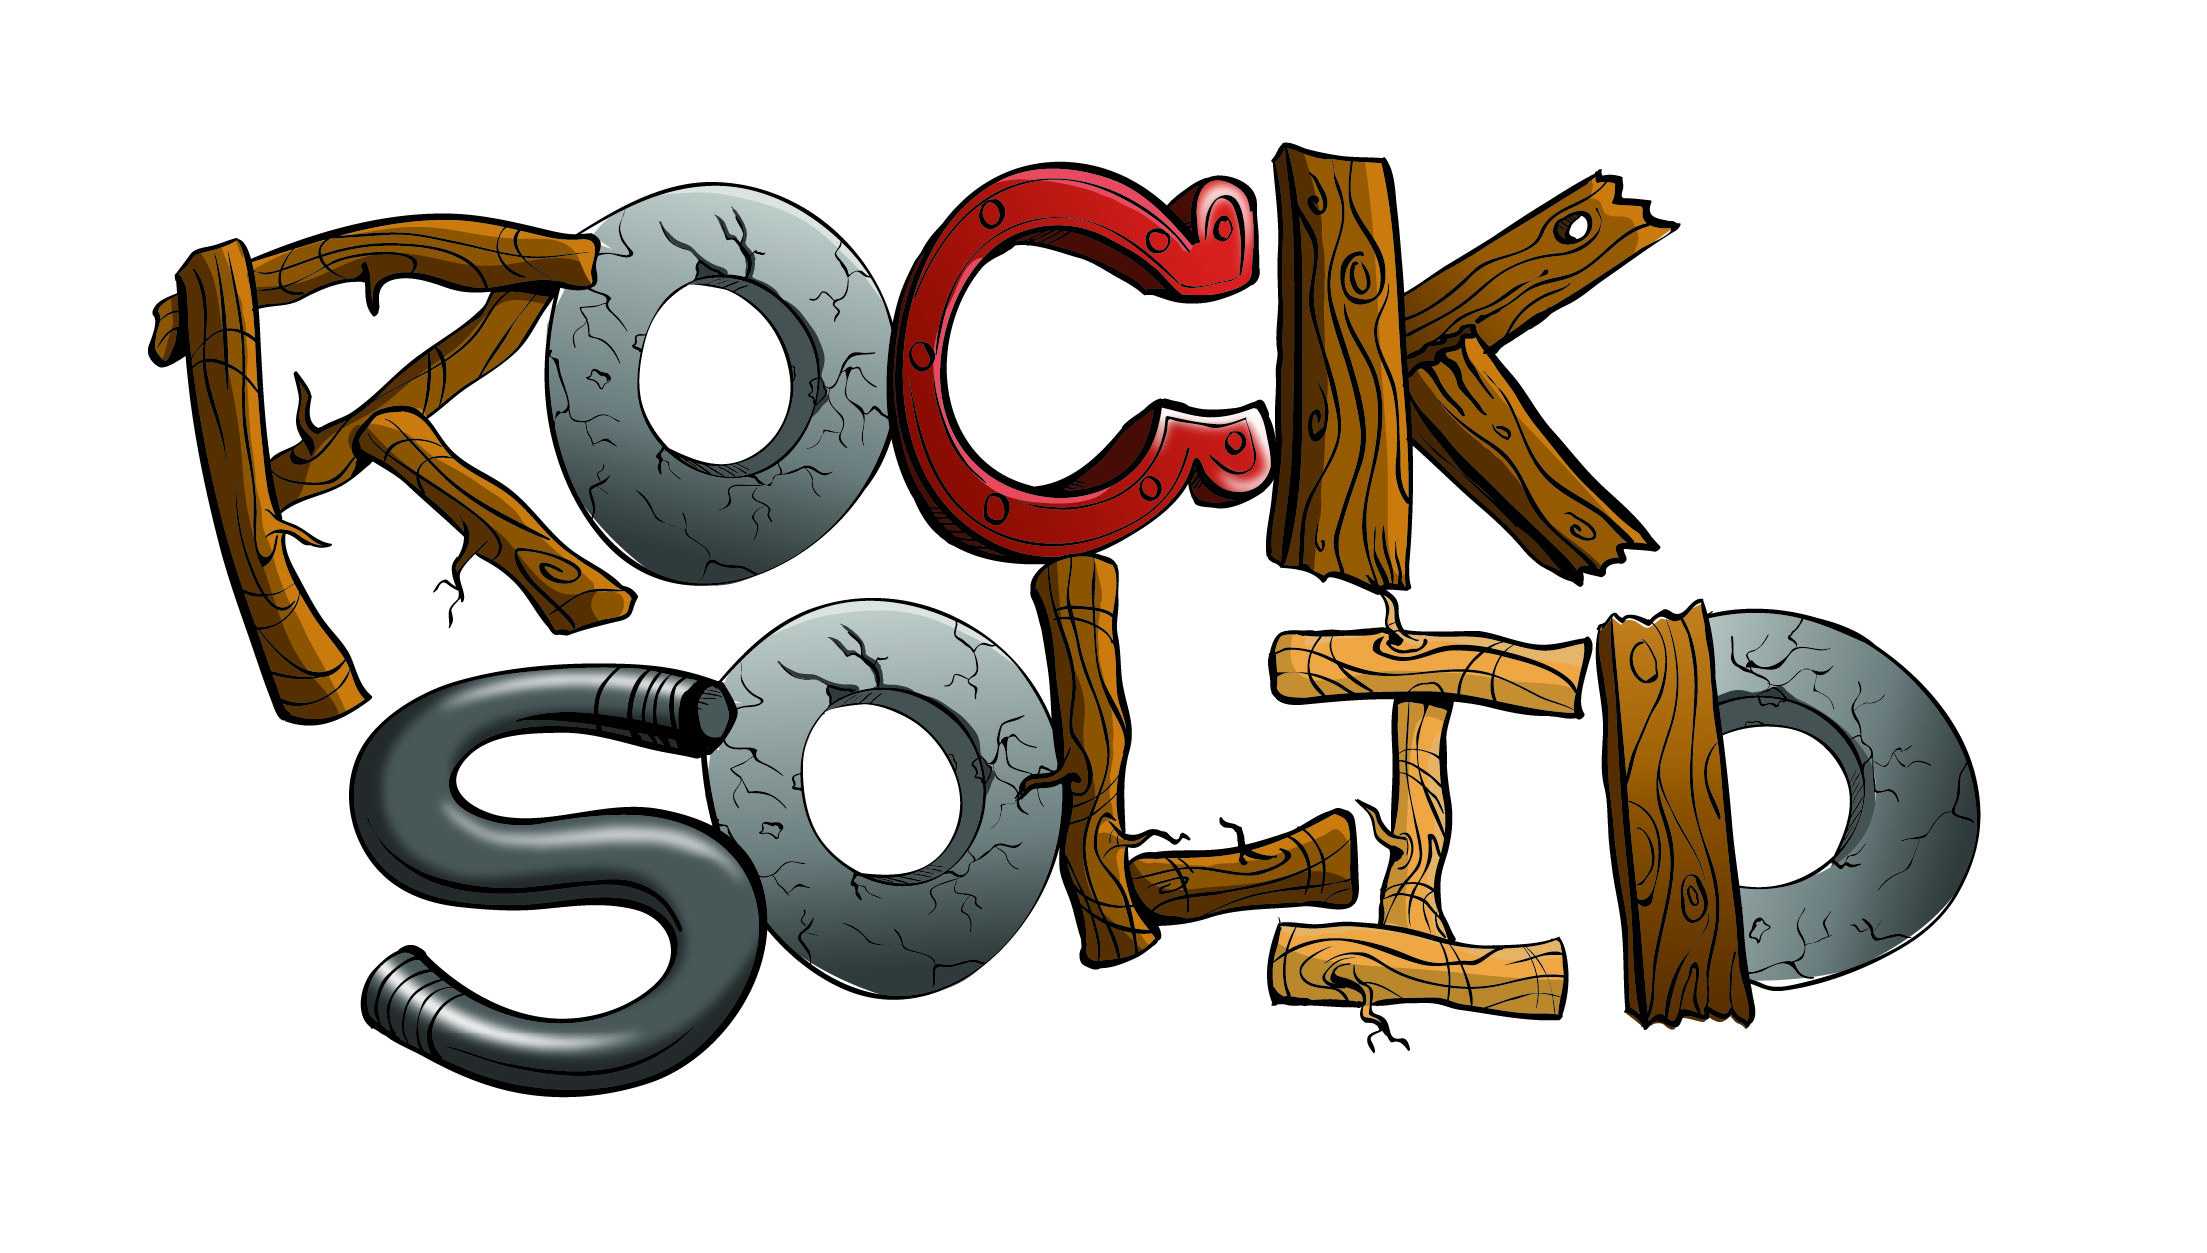 Rock clip art at vector clip art free 2 image #17335